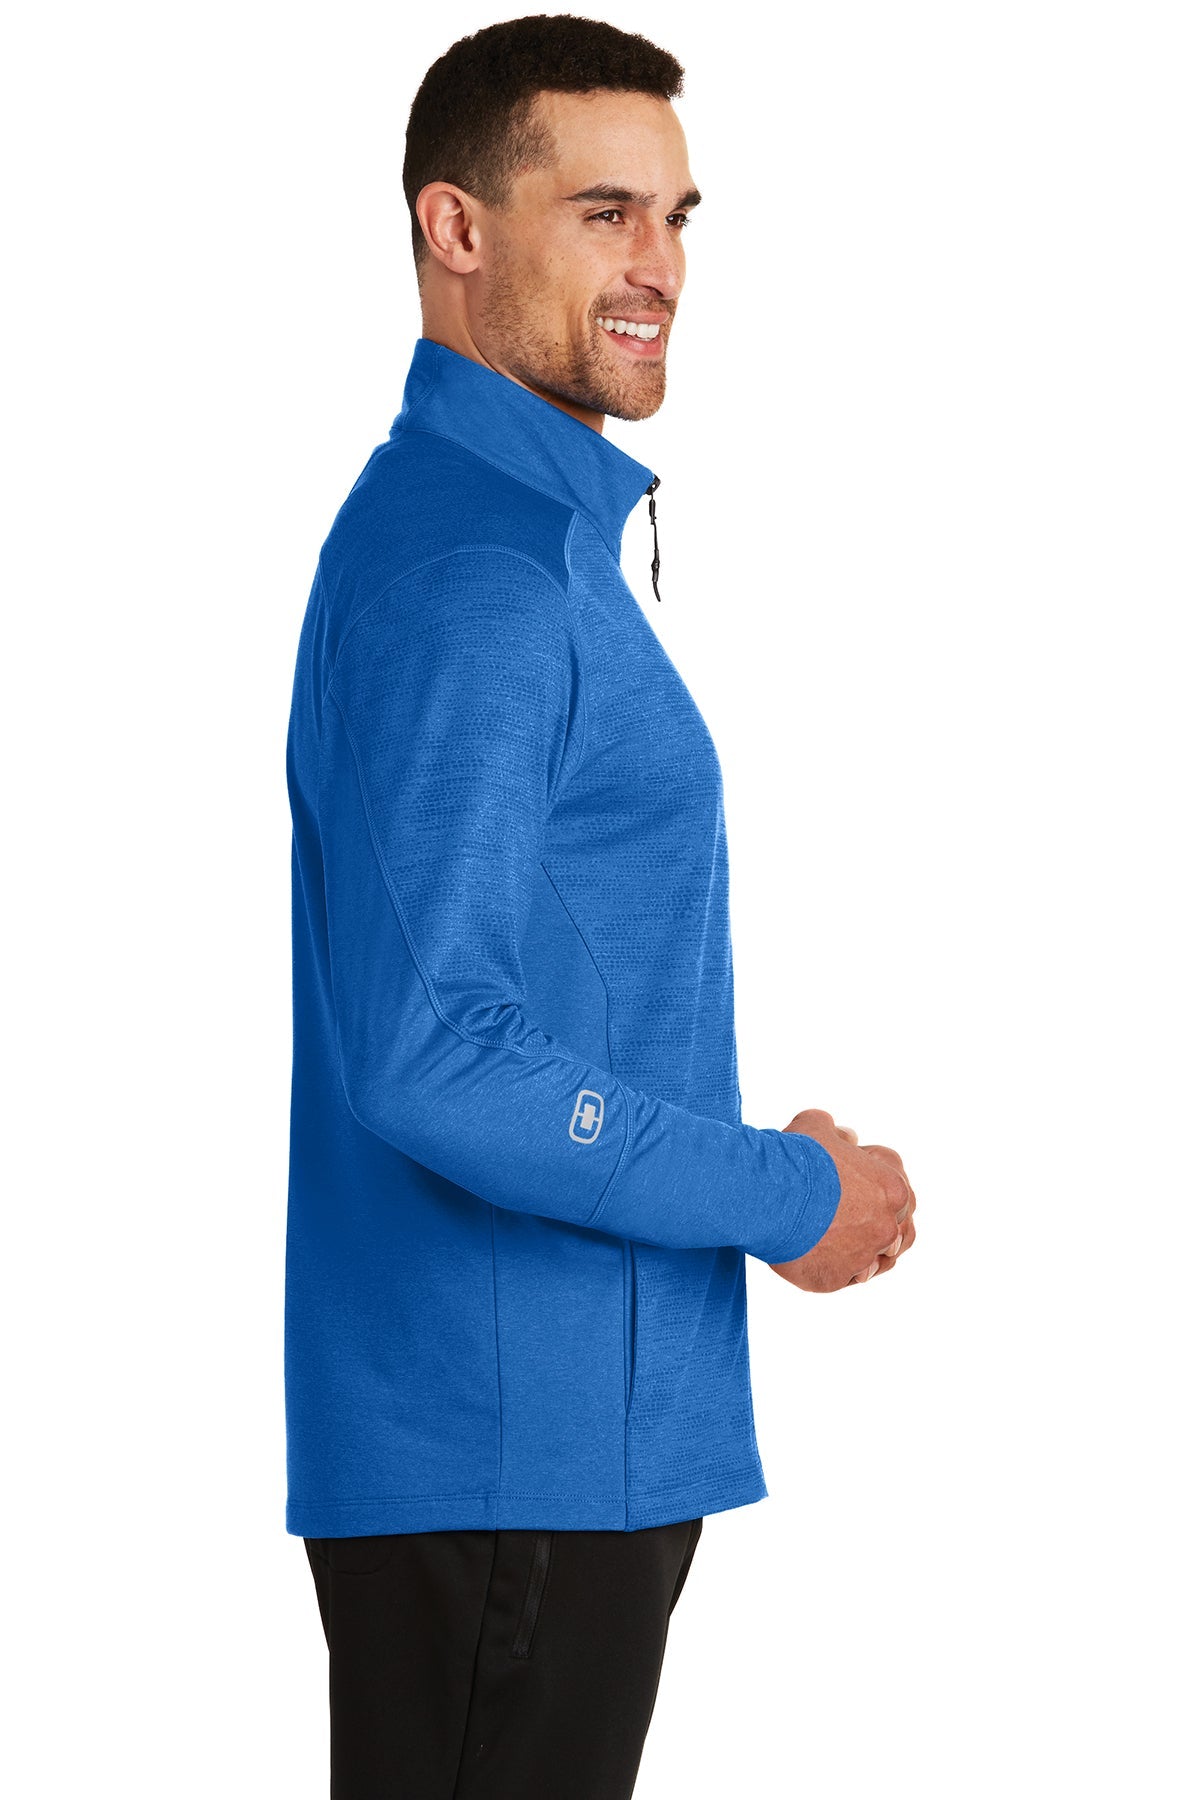 ogio endurance_oe702 _electric blue heather_company_logo_jackets